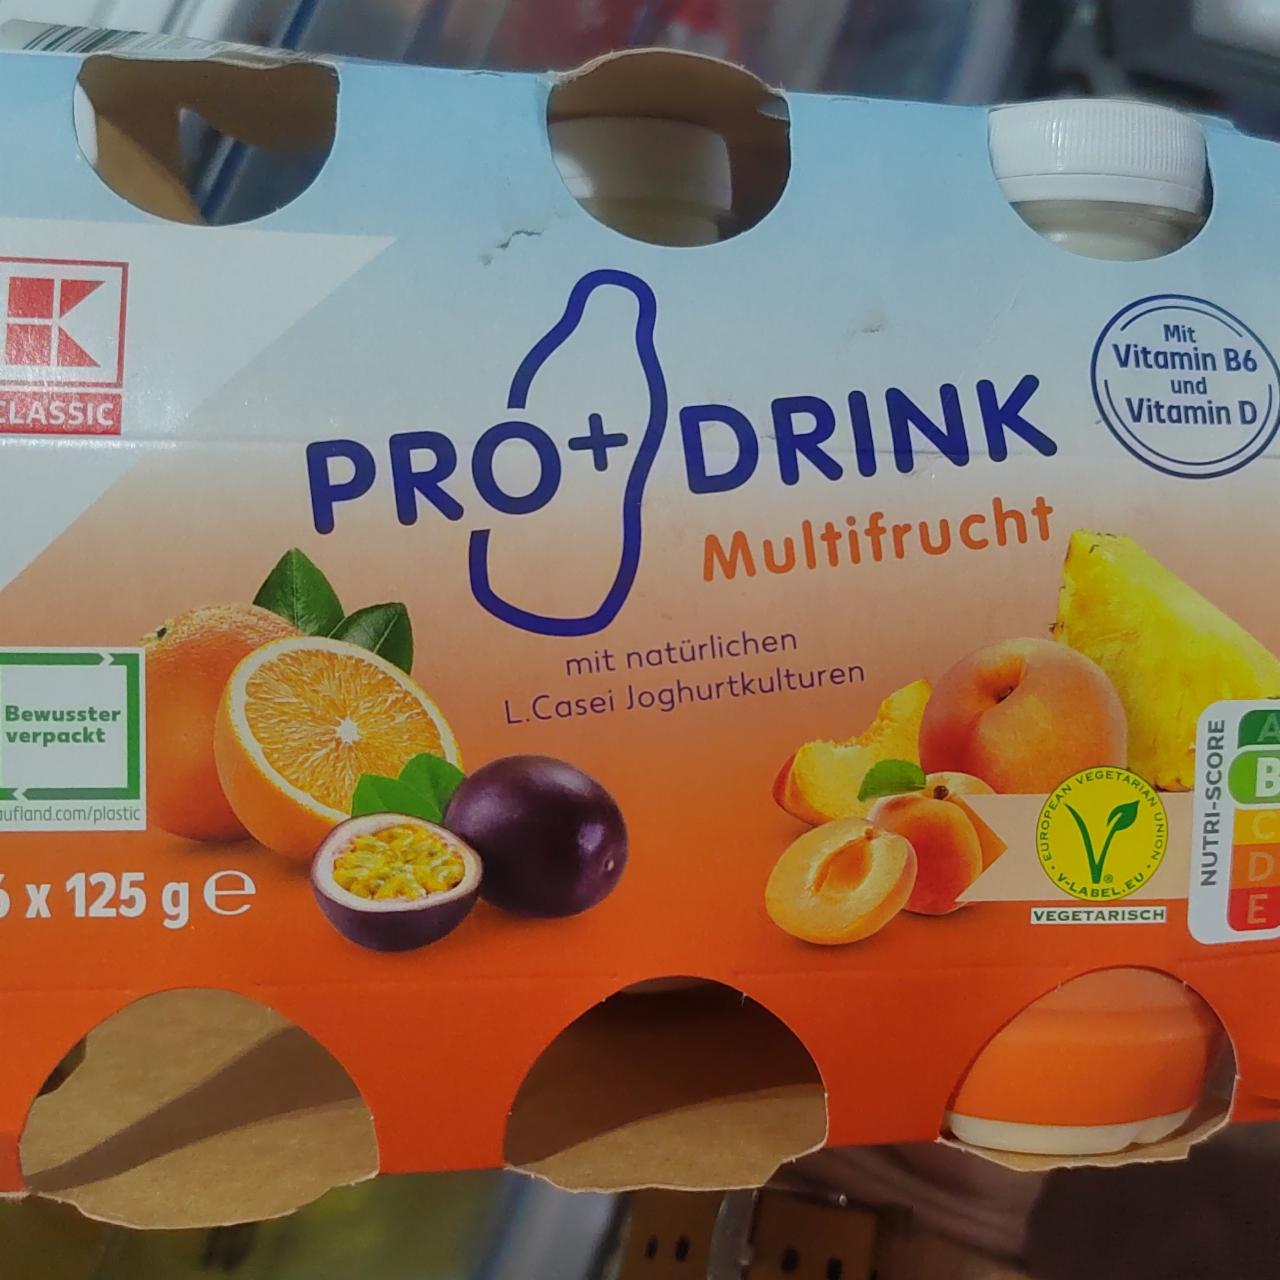 Fotografie - Pro+drink Multifrucht K-Classic